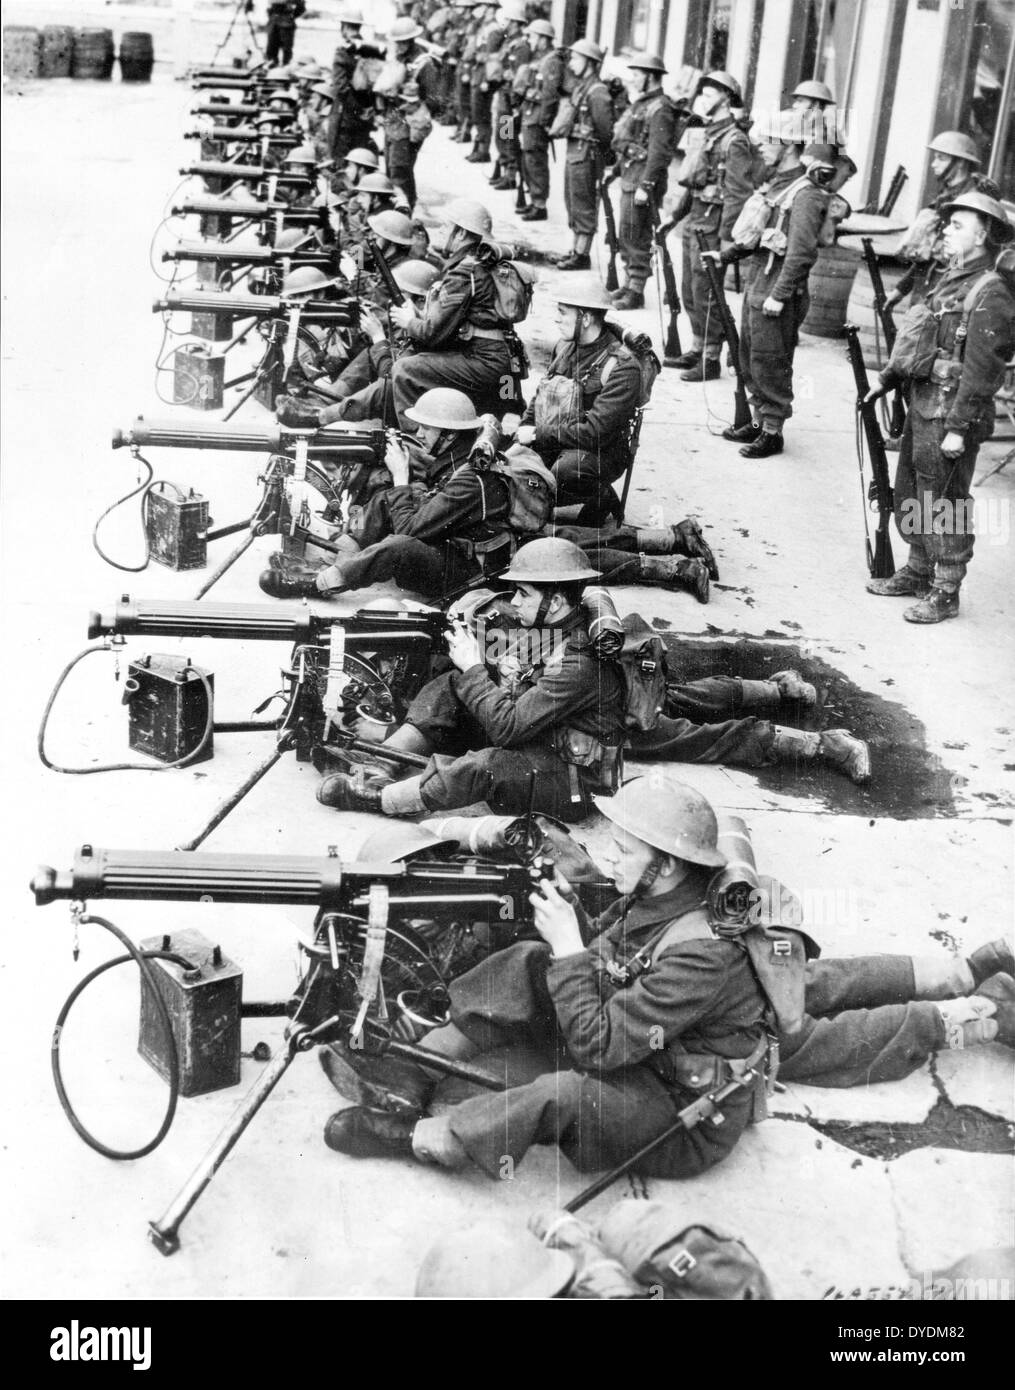 Vickers mitragliatrice squadre dell'esercito britannico durante i primi anni di ww2 Foto Stock